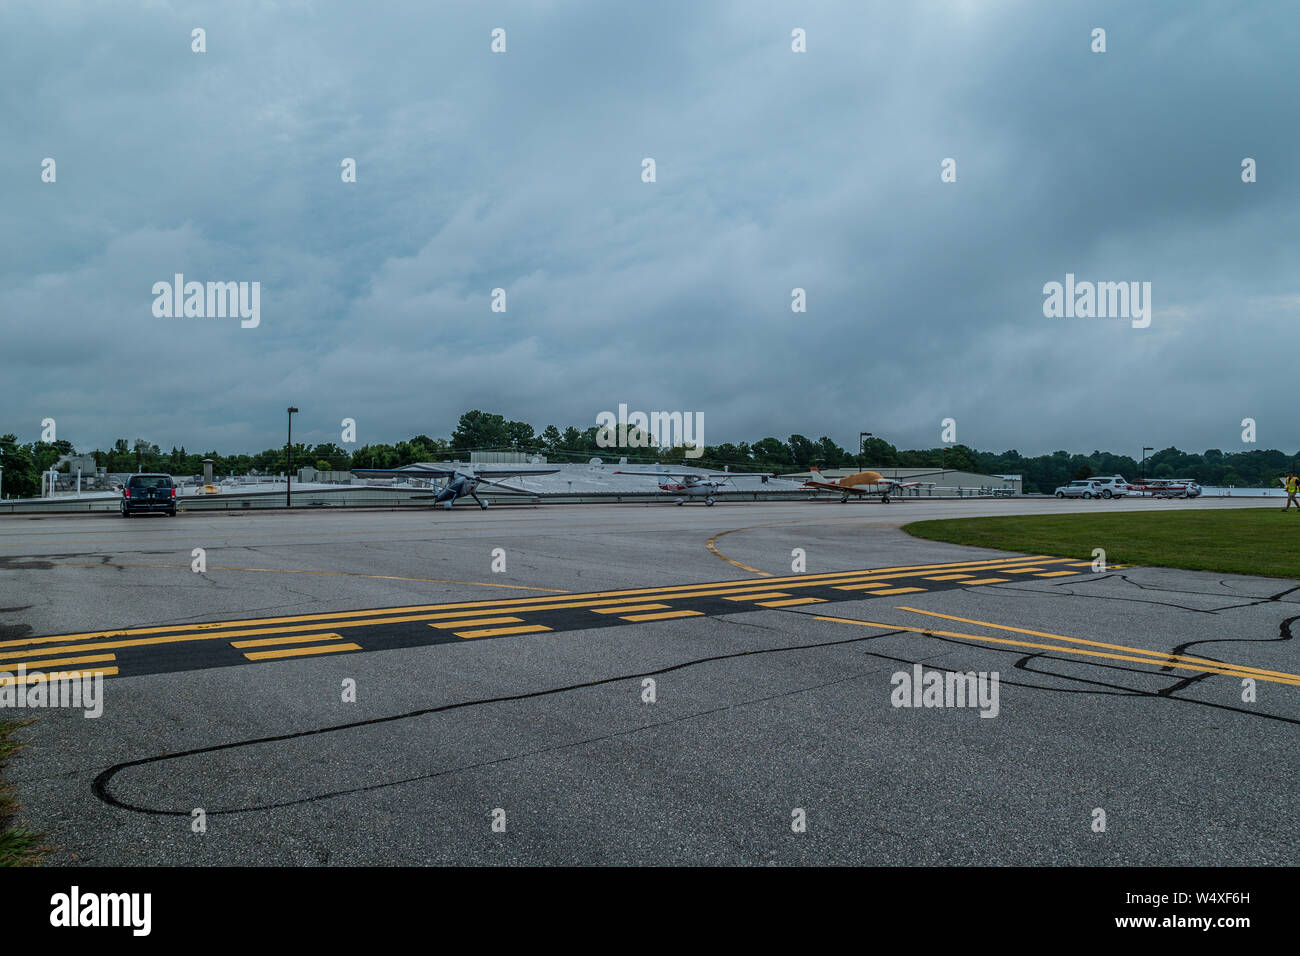 Kleine Flugzeuge in der Nähe der Start- und Landebahn im Hintergrund geparkt auf einem sehr kleinen Flughafen an einem bewölkten Tag im Sommer Stockfoto